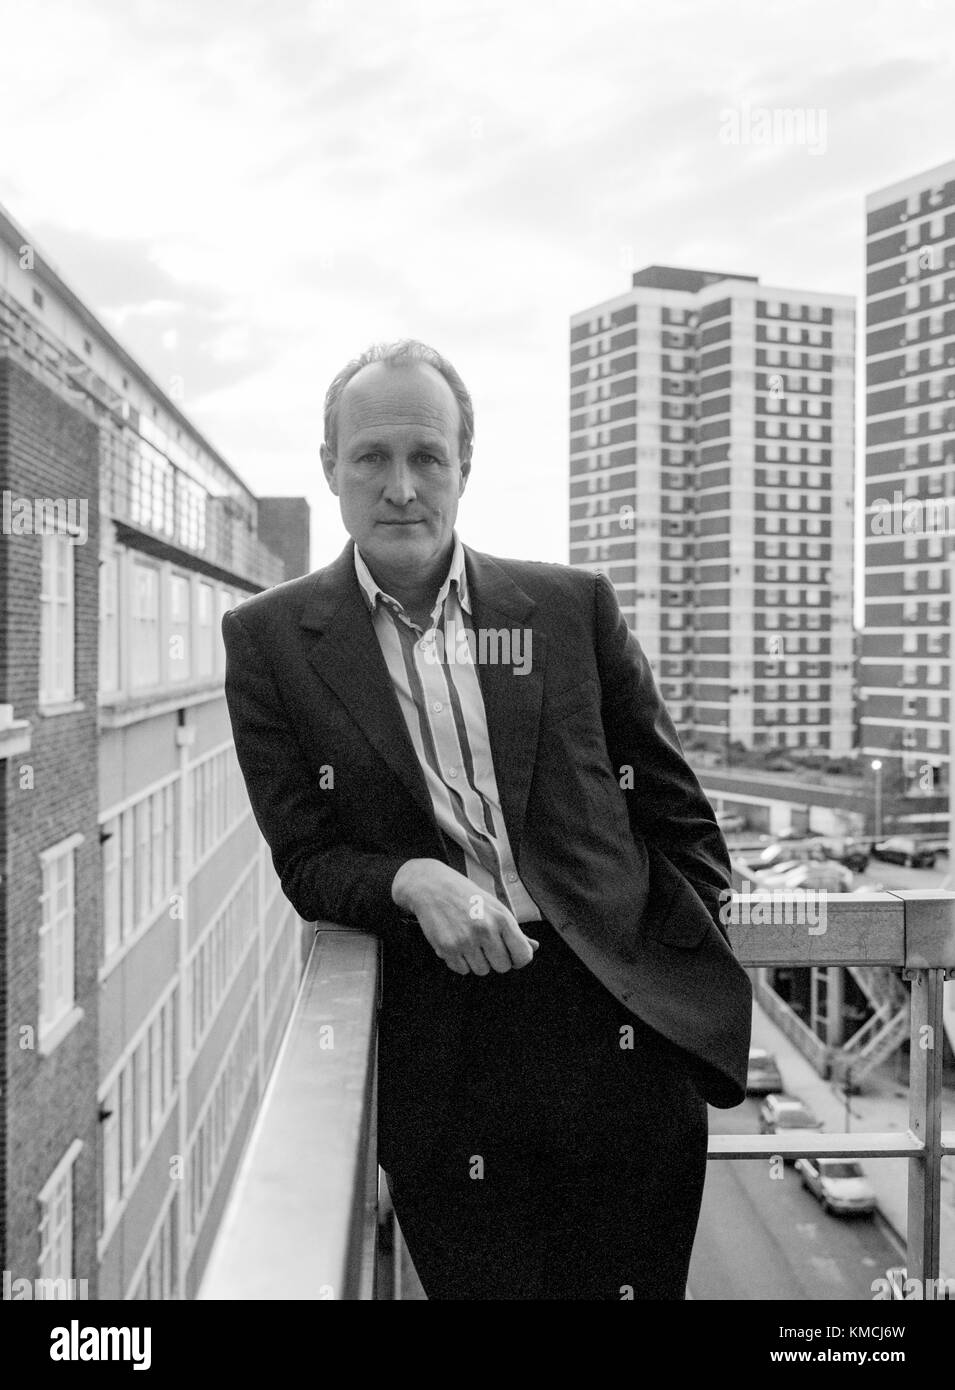 Sir Peter bazalgette, producteur de télévision français, photographiés à l'endemol bureaux à Shepherd's Bush, Londres, Angleterre, Royaume-Uni. Banque D'Images